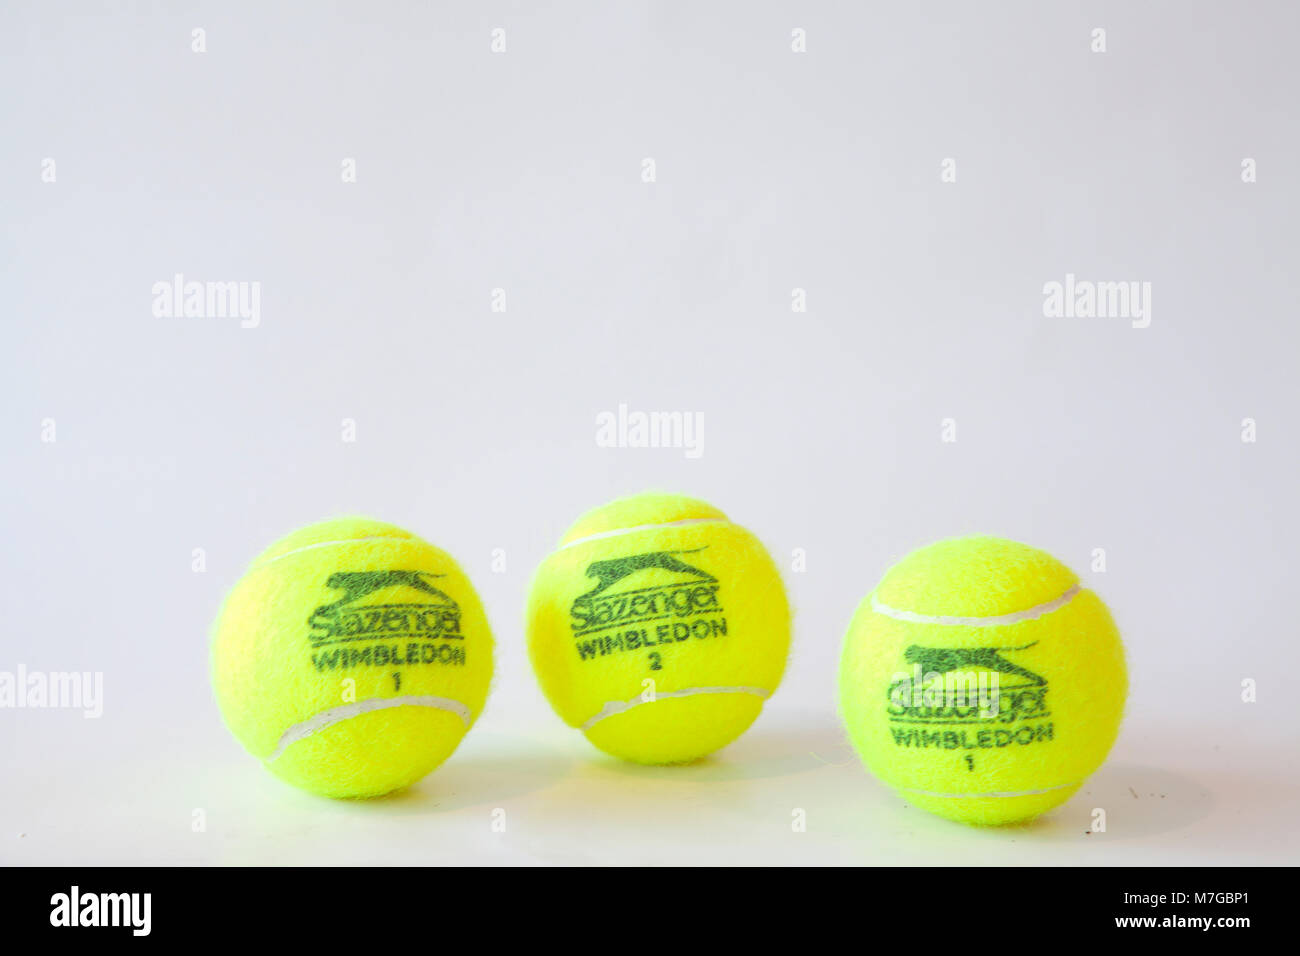 Wimbledon tennis balls hi-res stock photography and images - Alamy